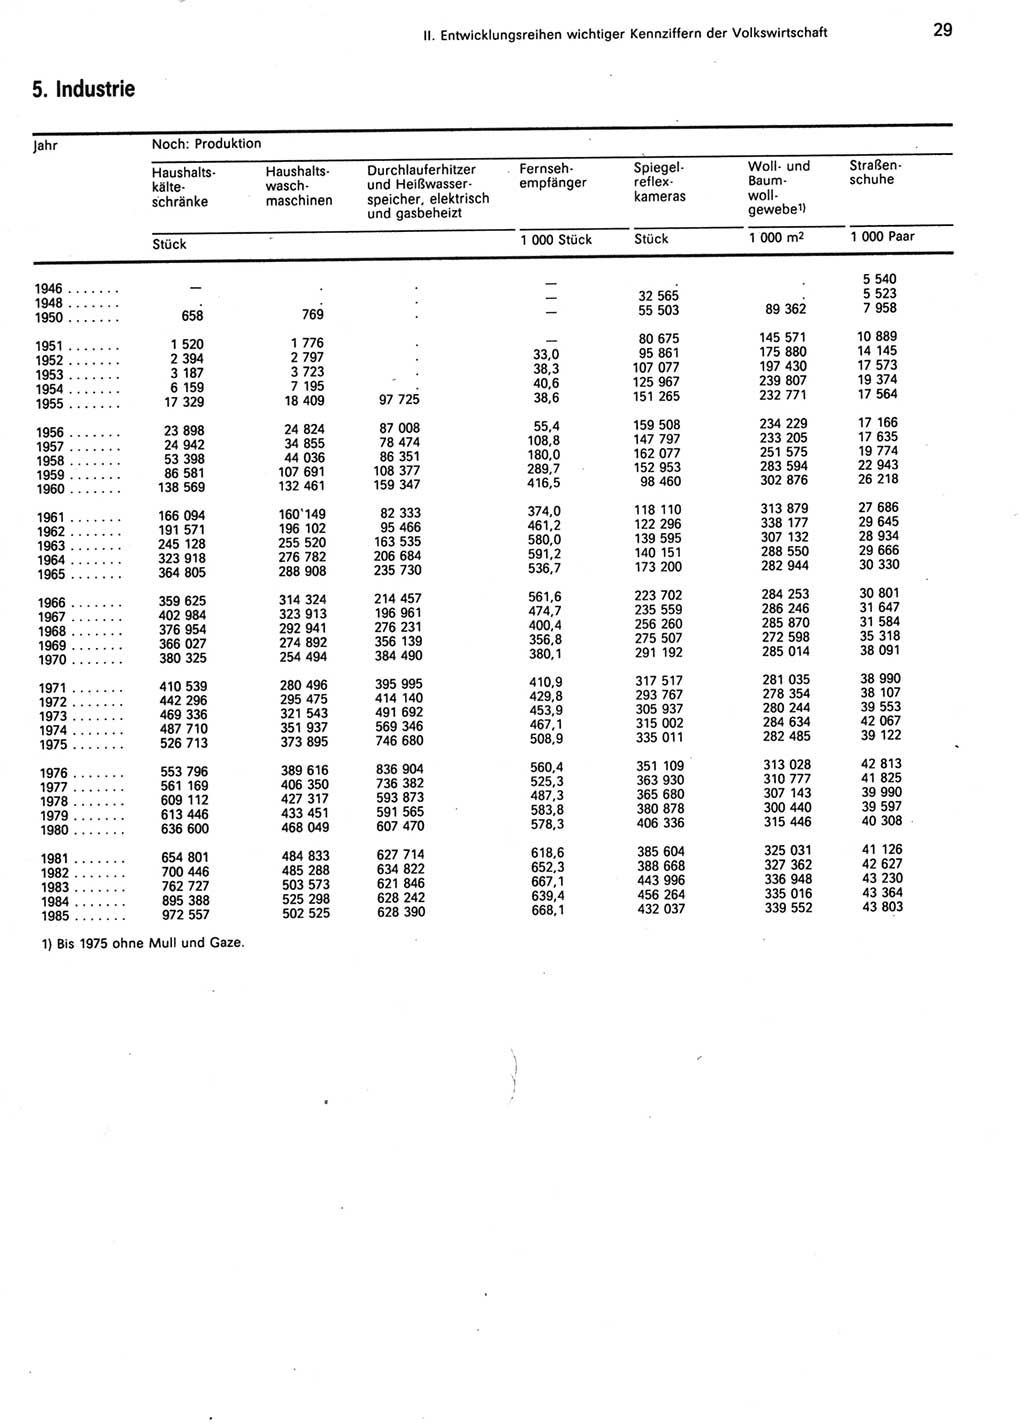 Statistisches Jahrbuch der Deutschen Demokratischen Republik (DDR) 1986, Seite 29 (Stat. Jb. DDR 1986, S. 29)